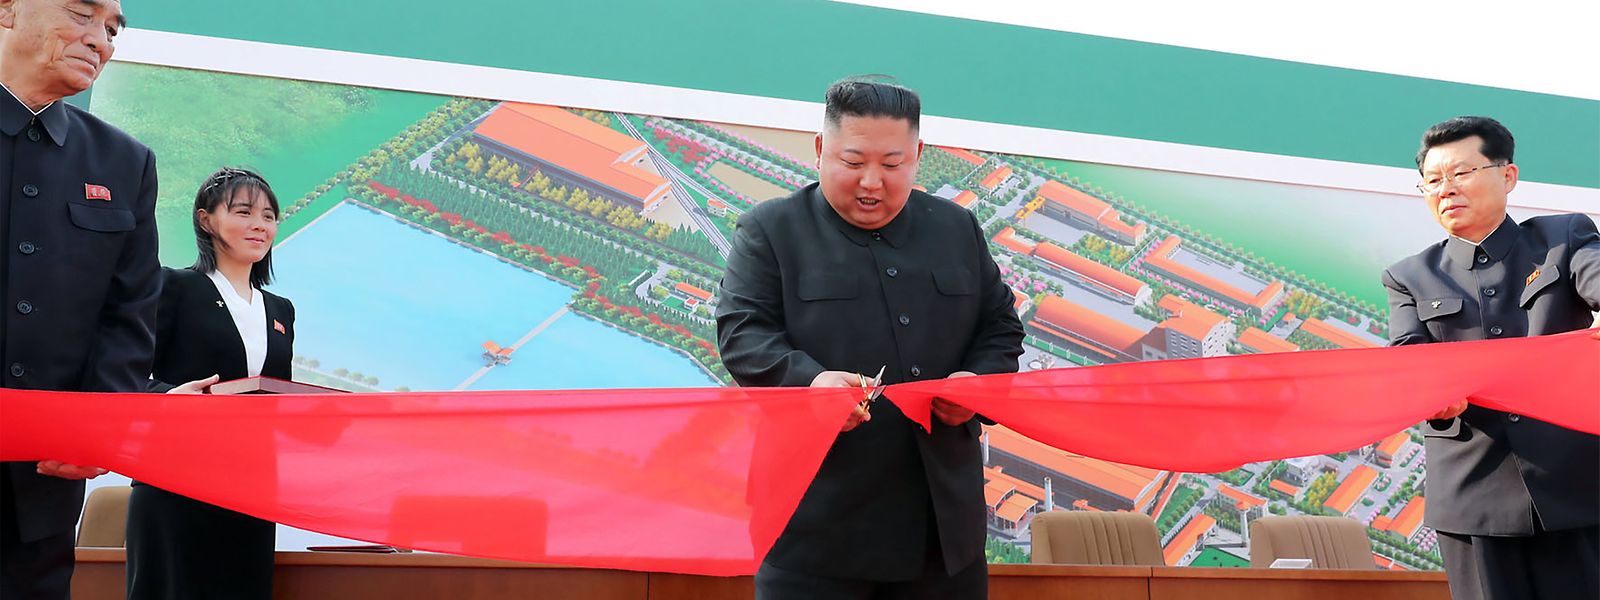 Ein am 2. Mai veröffentlichtes Propagandafoto zeigt Kim "in Aktion". Wie bei allen staatlichen Bildern aus Nordkiorea ist die Quelle des Materials aber nicht unabhängig verifiziert.